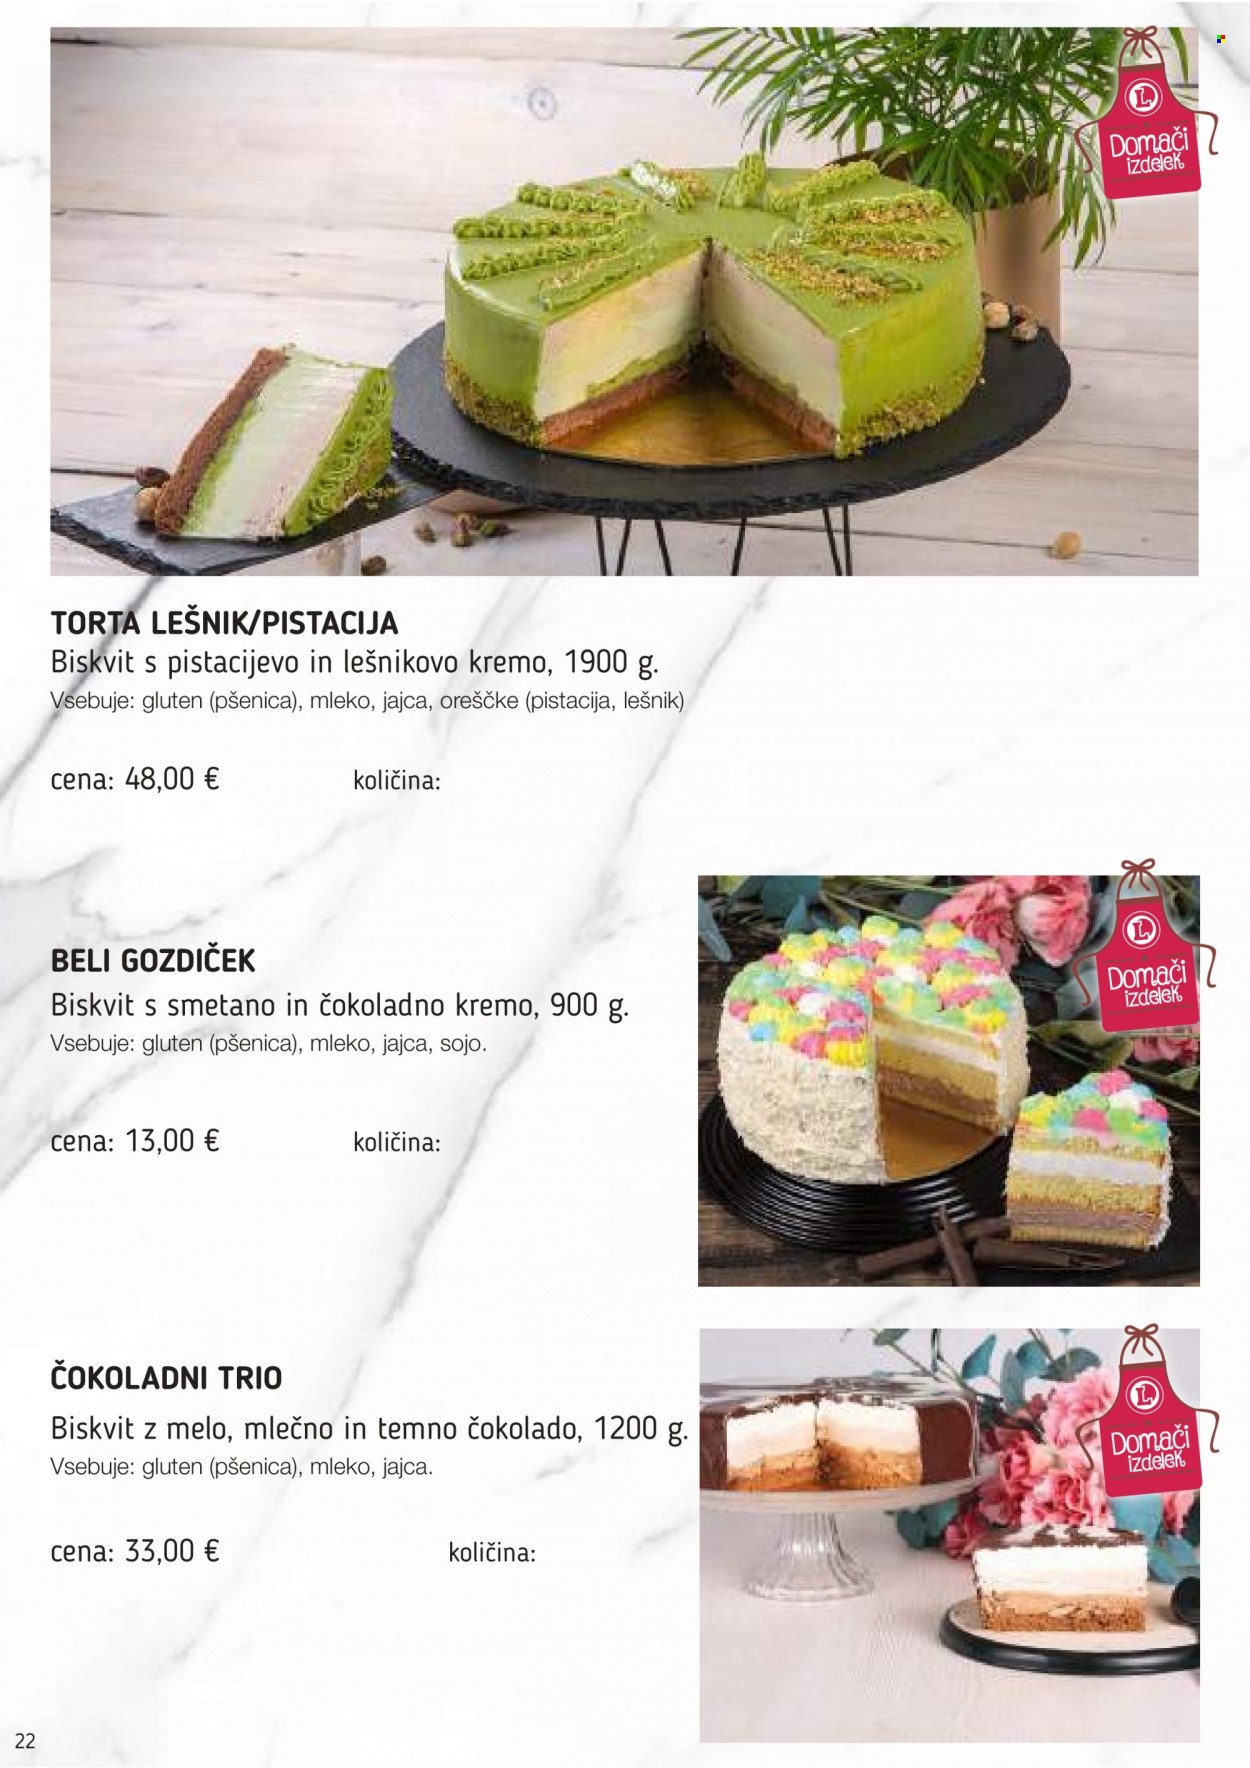 thumbnail - E.Leclerc katalog - Ponudba izdelkov - torta, mleko, jajca. Stran 22.